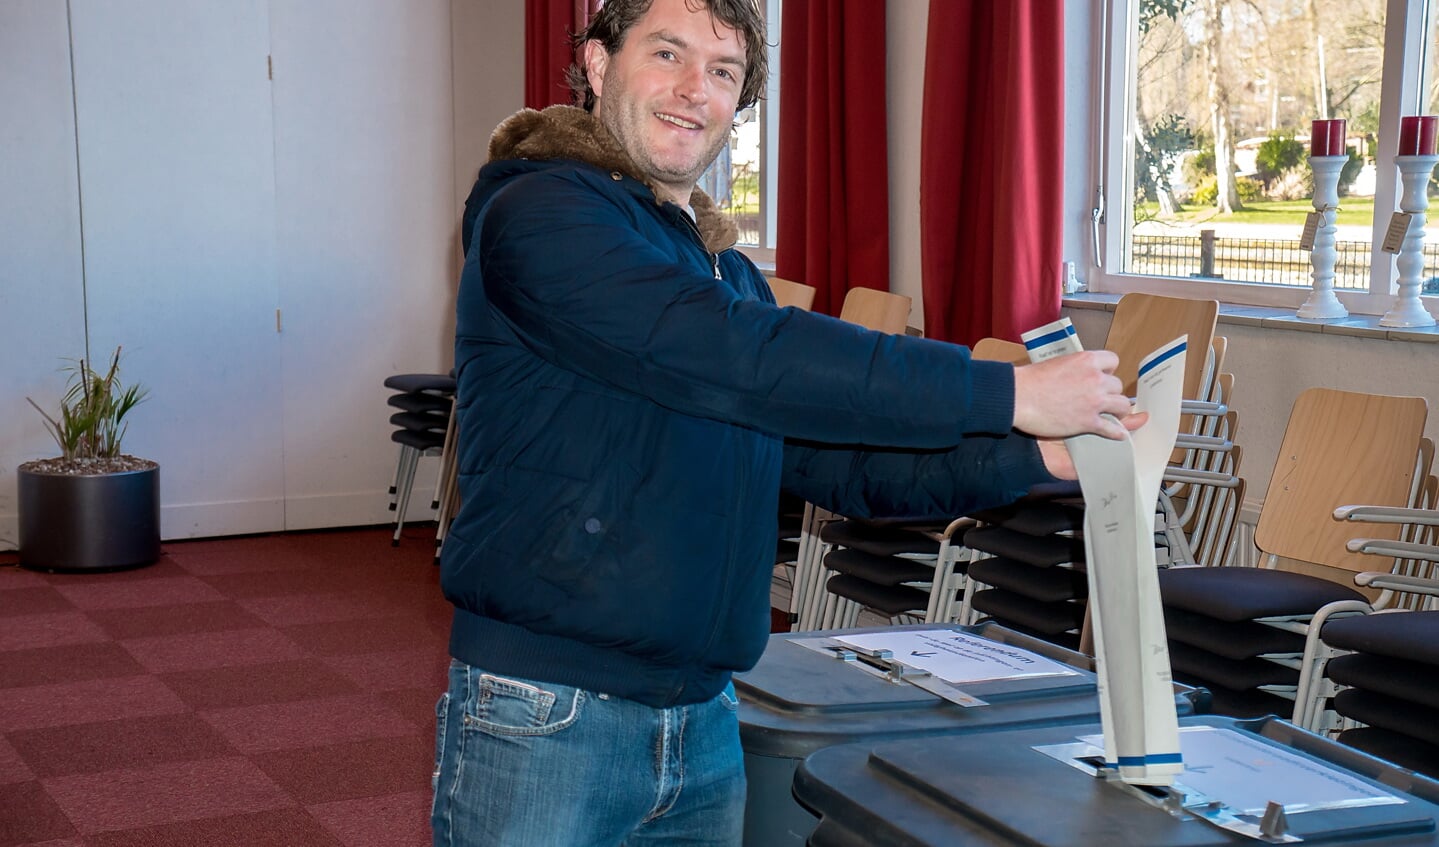 VVD lijsttrekker Bart Hoenen was er vanochtend al vroeg bij om zijn stem uit te brengen. 